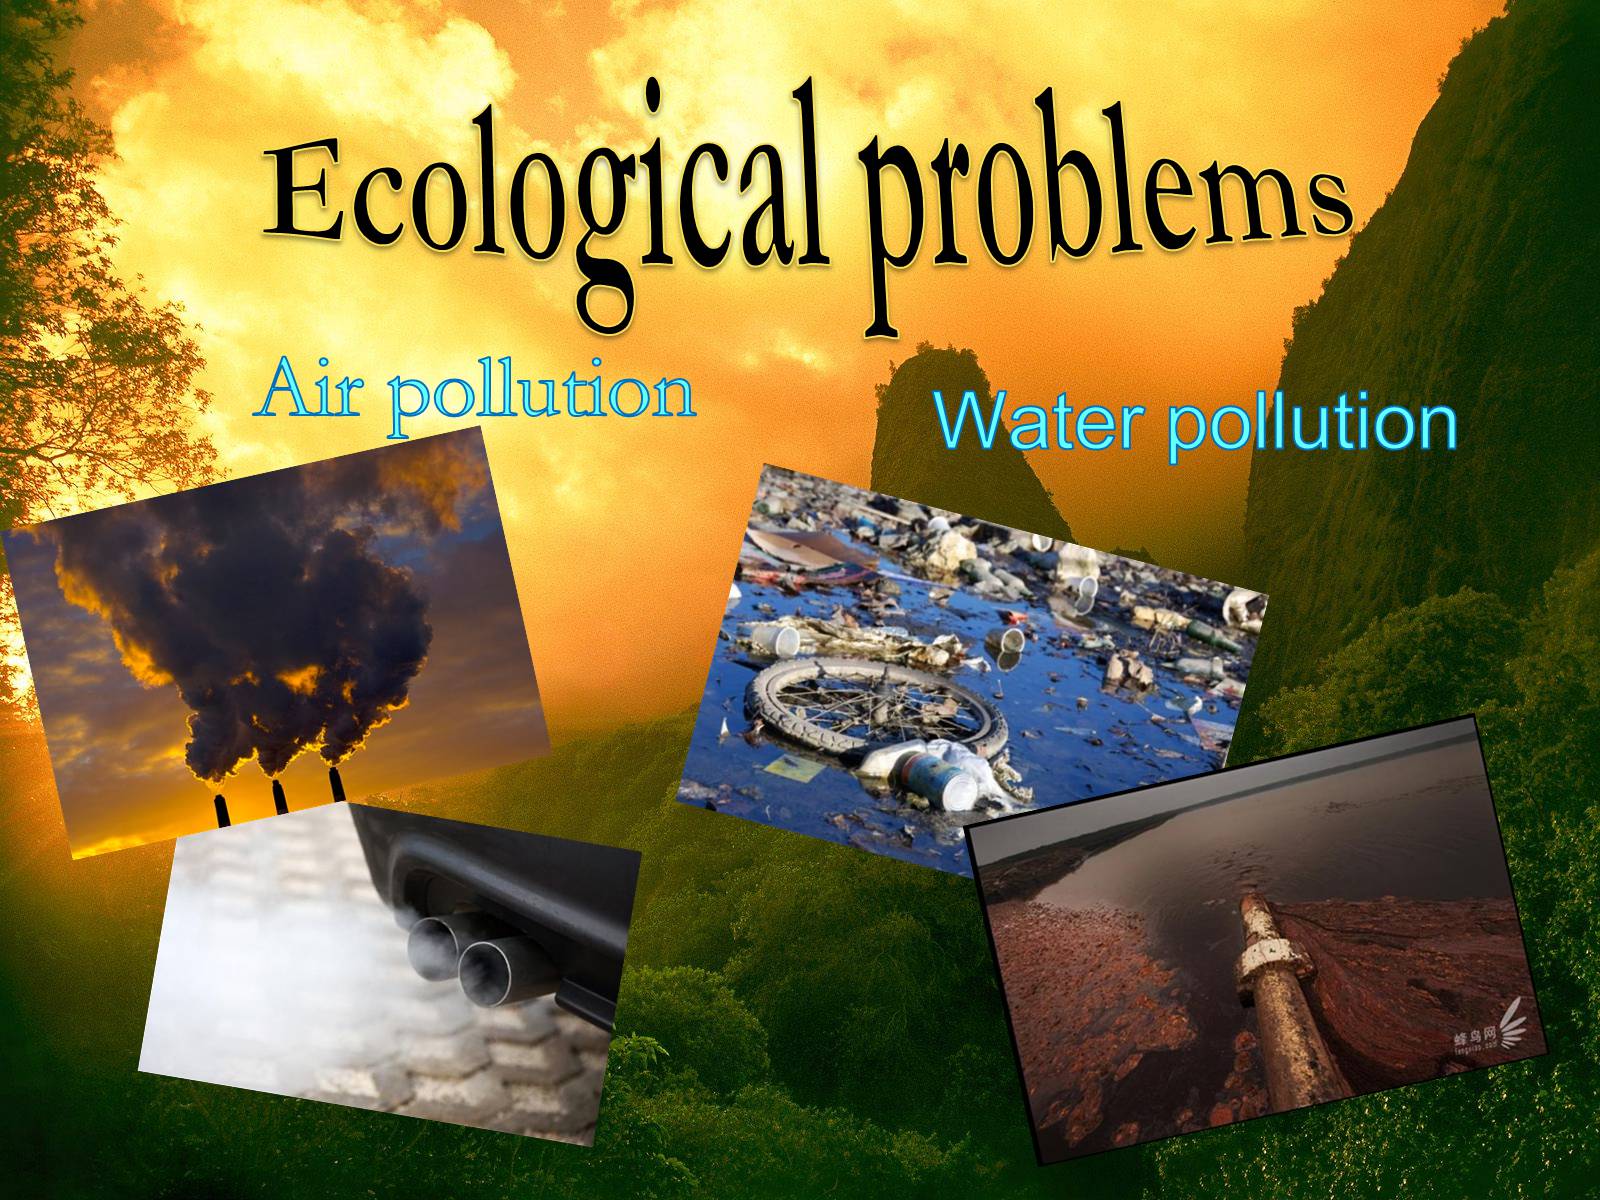 Есть проблемы на английском. Экологические проблемы на английском. Тема Environmental problems. Проблемы окружающей среды на английском языке. Проект по английскому языку экологические проблемы.